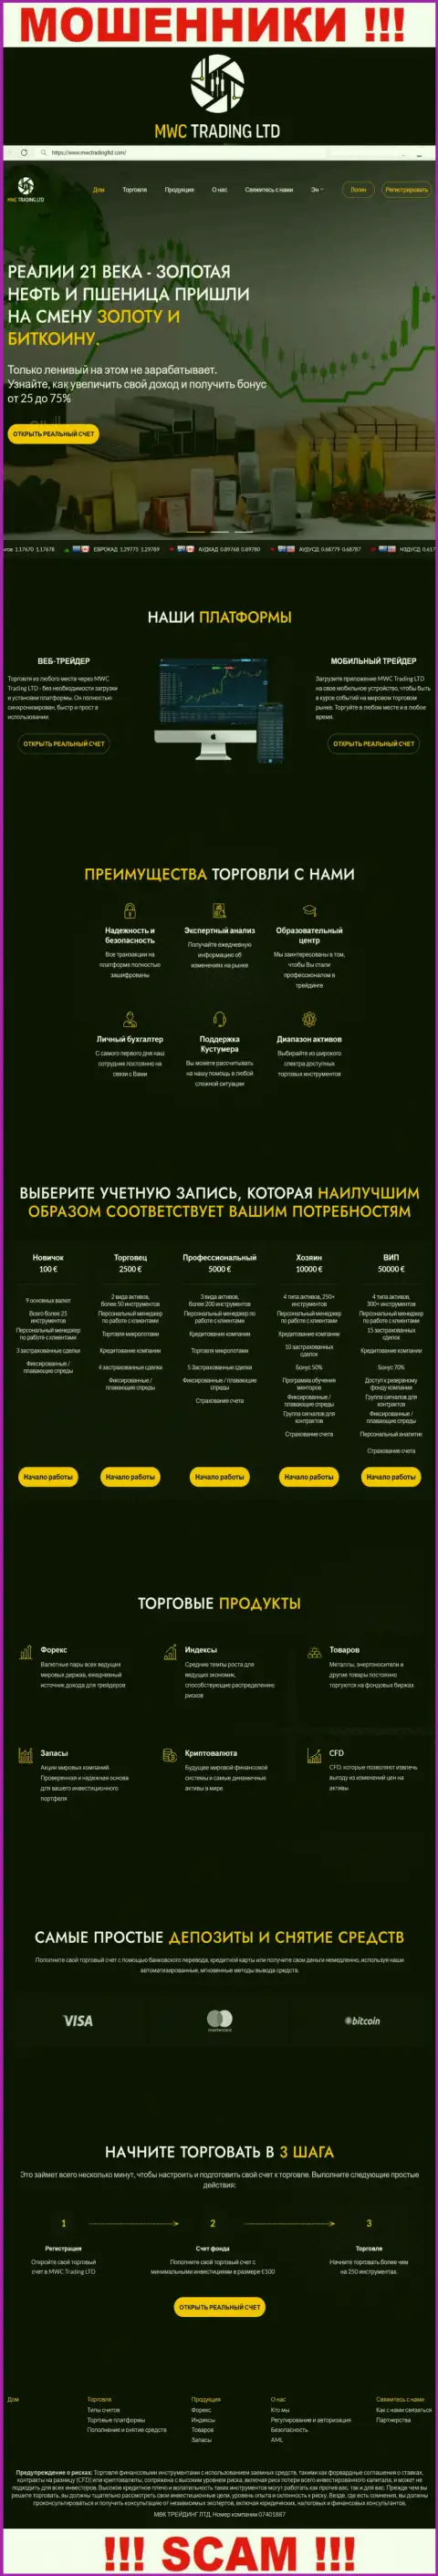 Скриншот официального сервиса жульнической конторы MWCTradingLtd Com